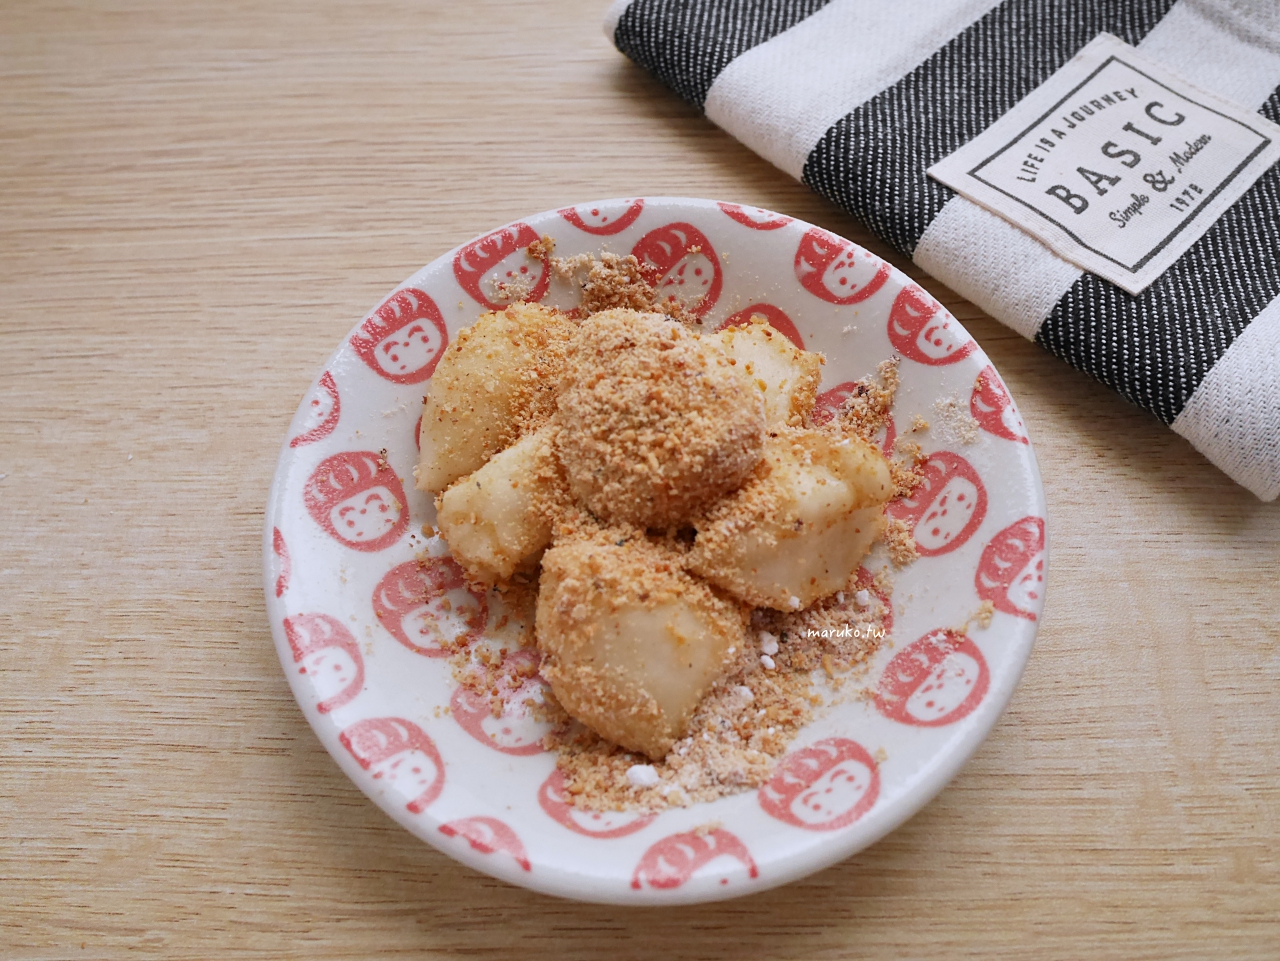 【食譜】花生麻糬 用無糖豆漿做香軟麻糬 簡單免開火點心 @Maruko與美食有個約會